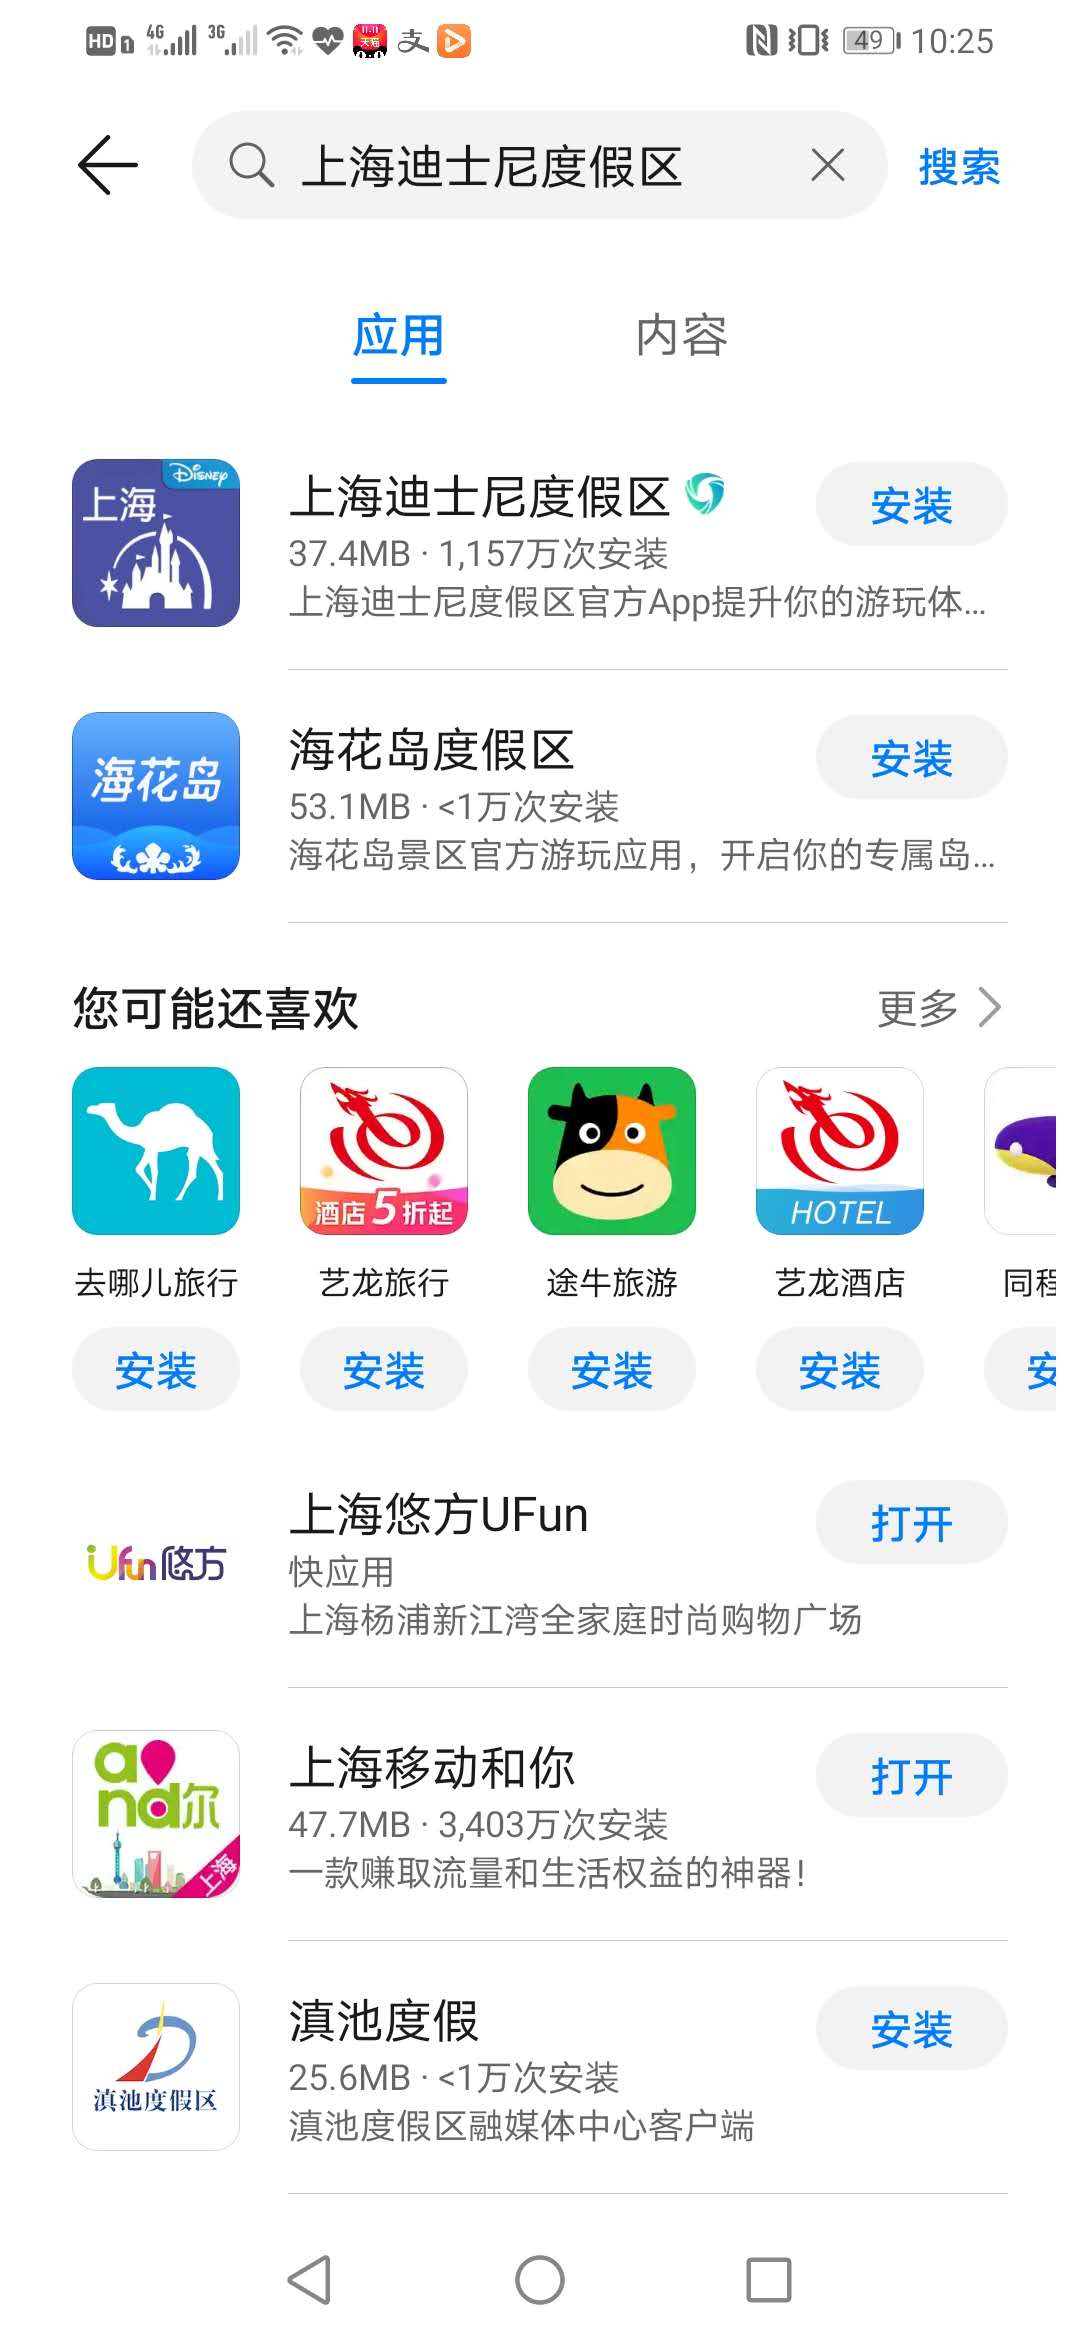 目前在华为应用市场搜索“上海迪士尼度假区”仅一款App，为上海迪士尼度假区官方App。